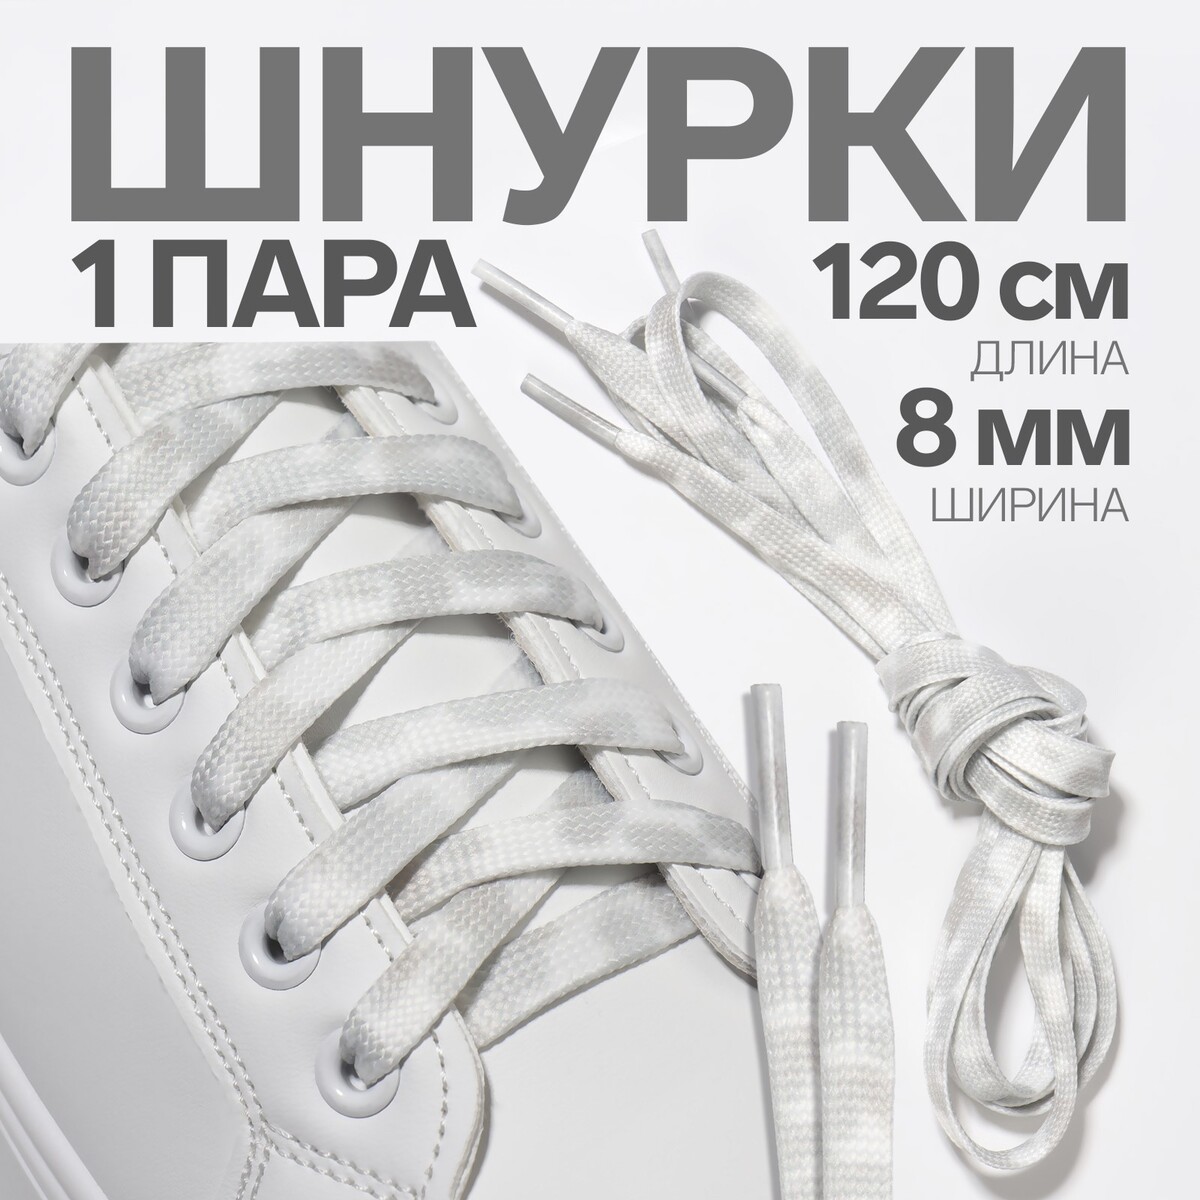 Шнурки для обуви, пара, плоские, 8 мм, 120 см, цвет белый/серый шнурки для обуви пара плоские 8 мм 120 см серый